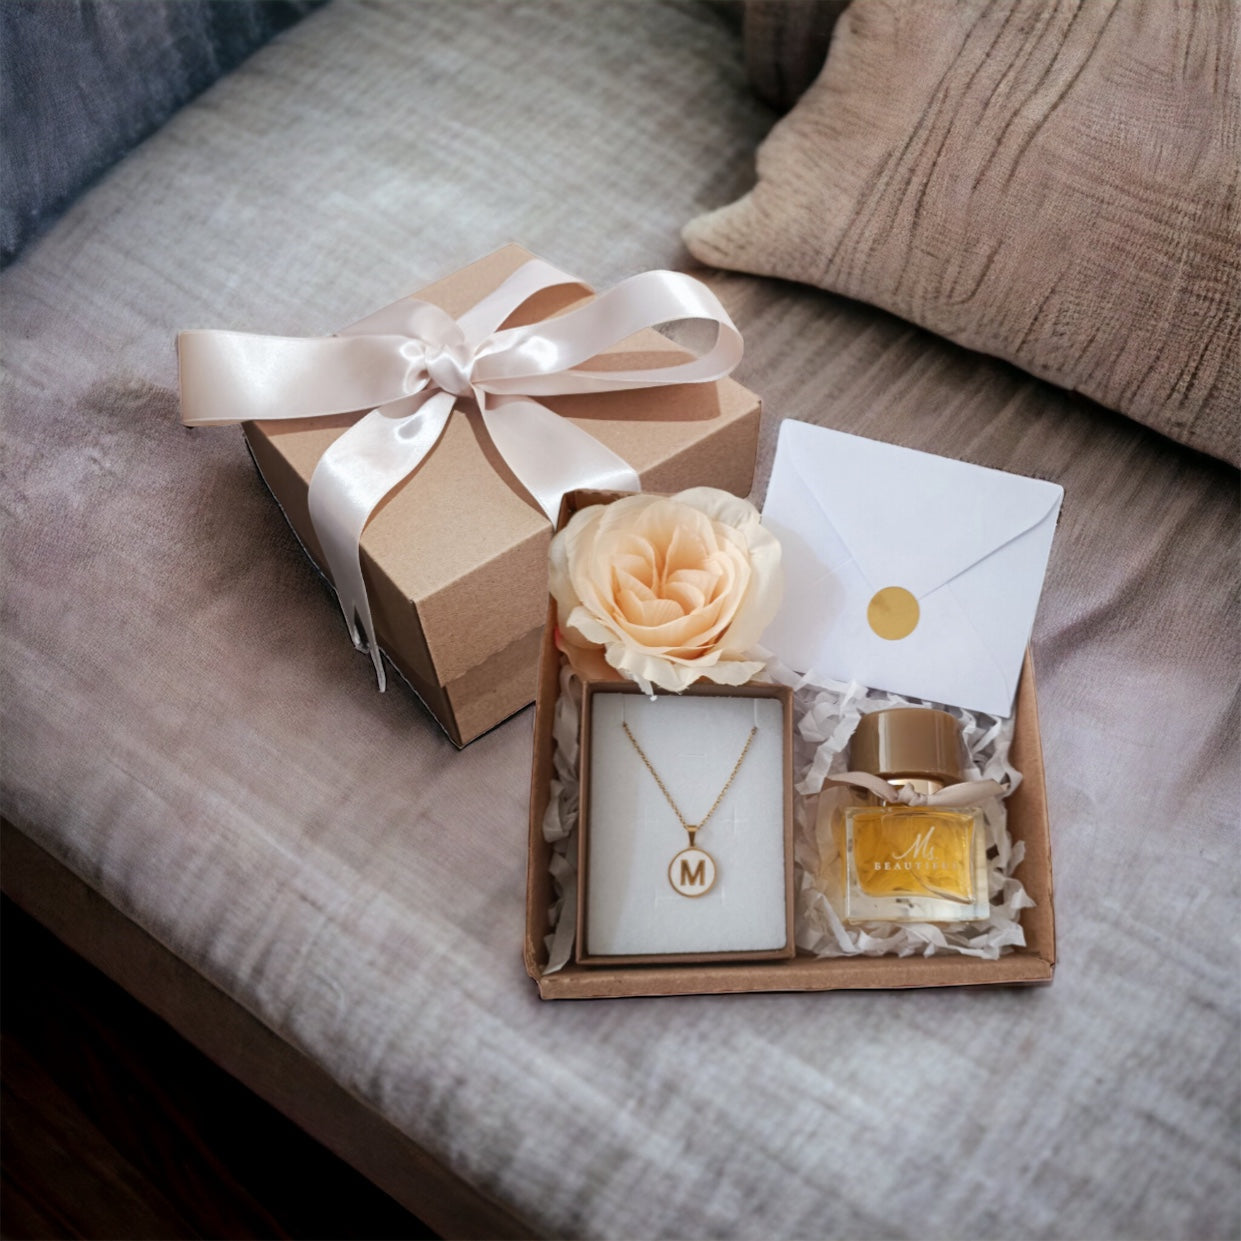 Regalo para mujer perfume collar y monedero – Envia tu regalo